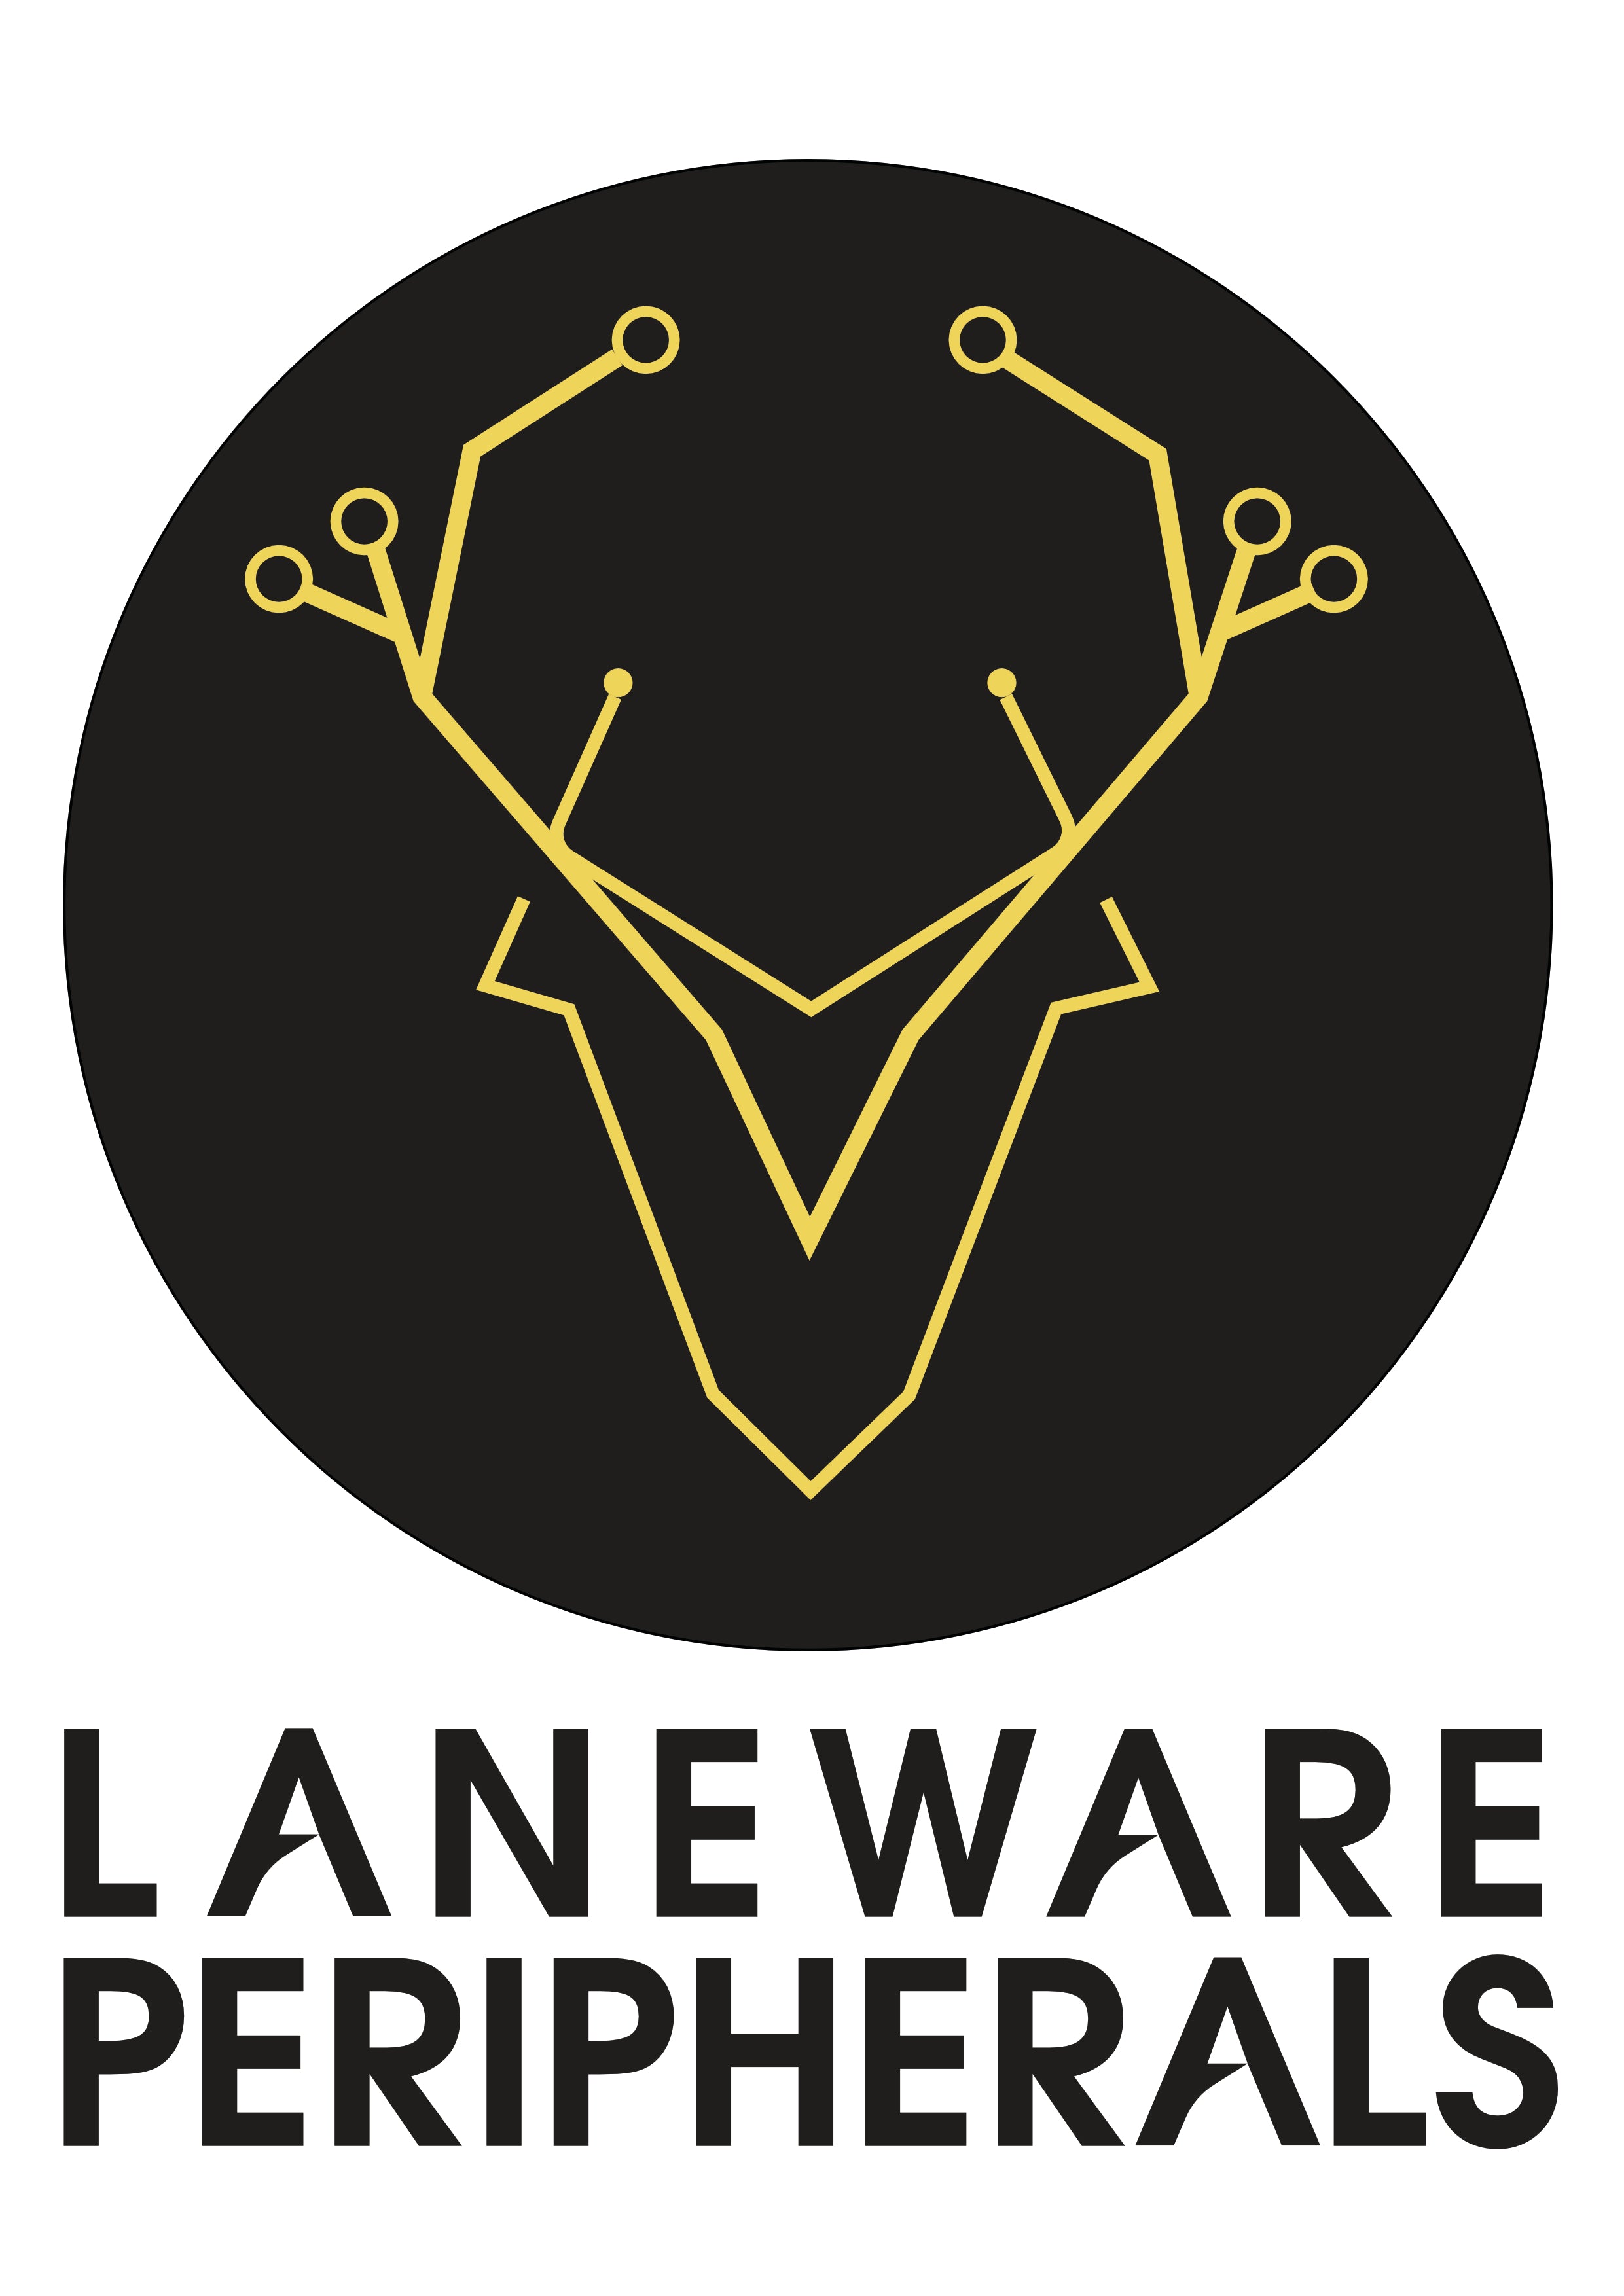 Laneware Peripherals